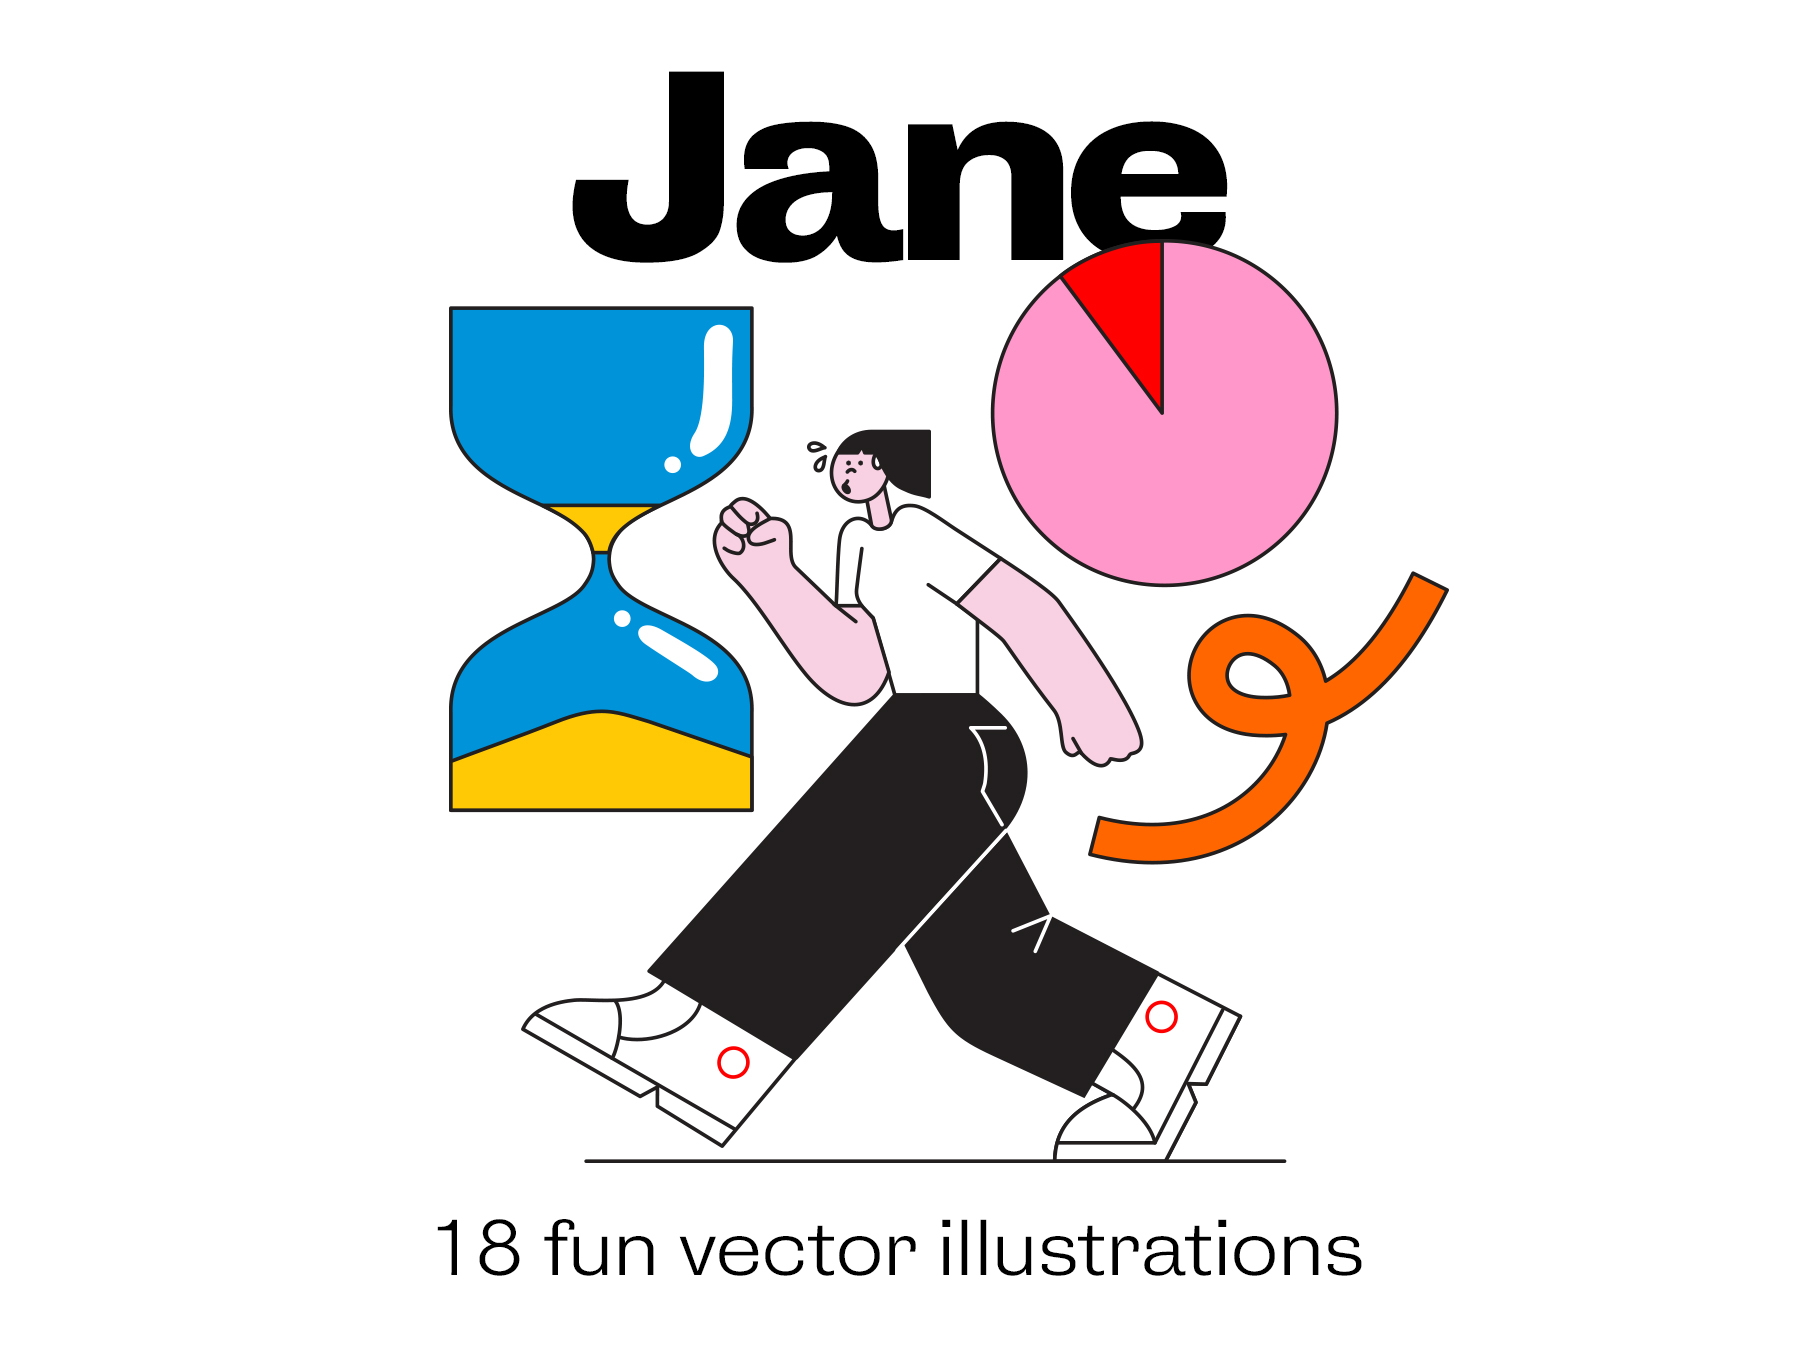 18个有趣的人物场景插画矢量素材 Jane - illust